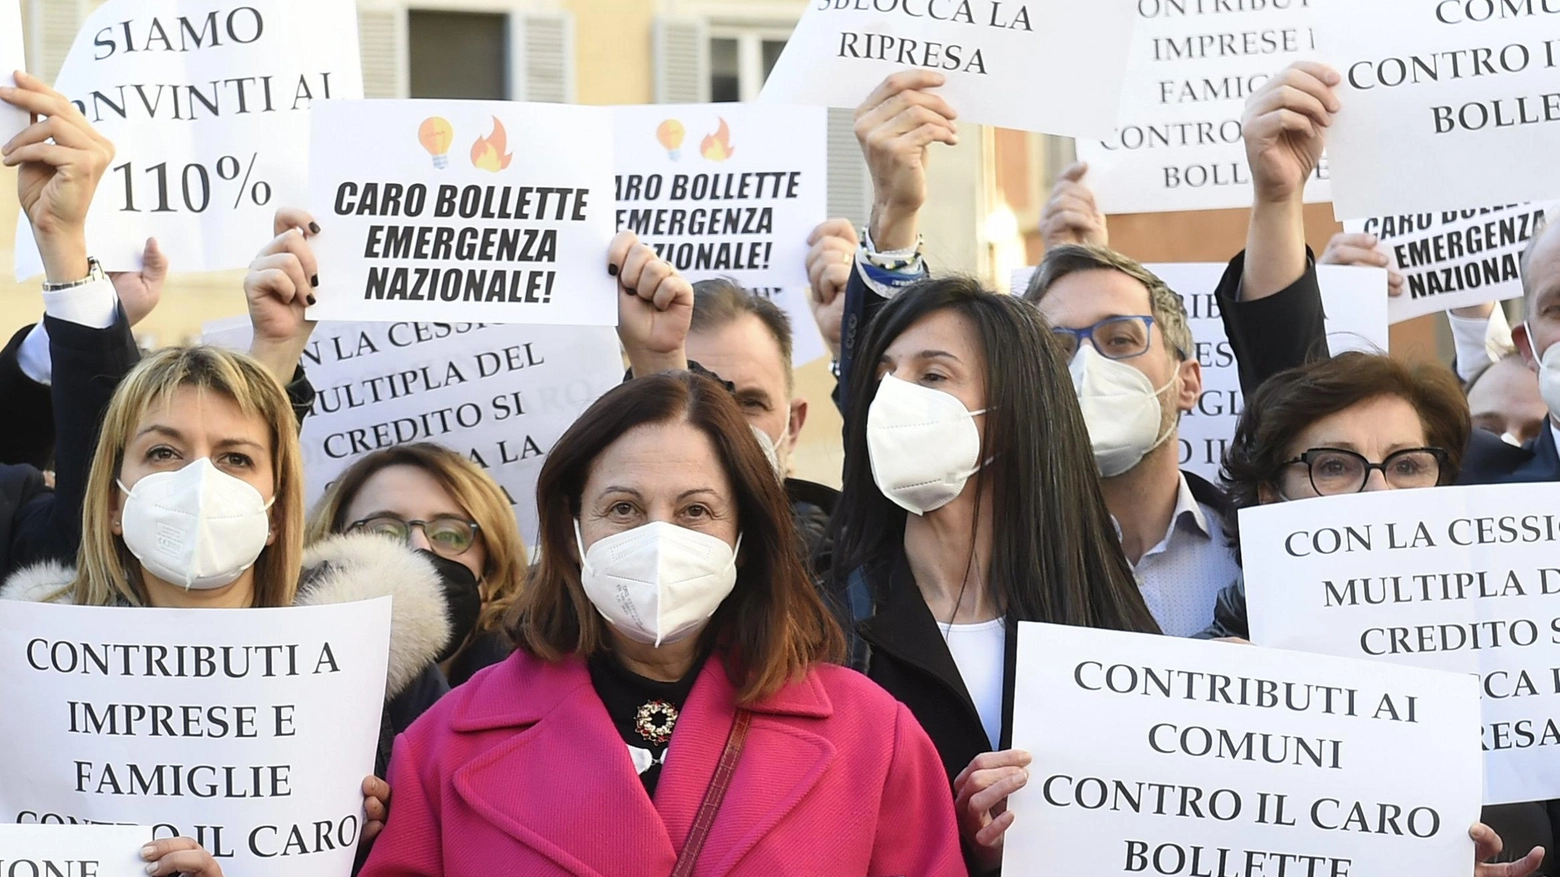 Una protesta della Lega contro il caro energia davanti a Montecitorio